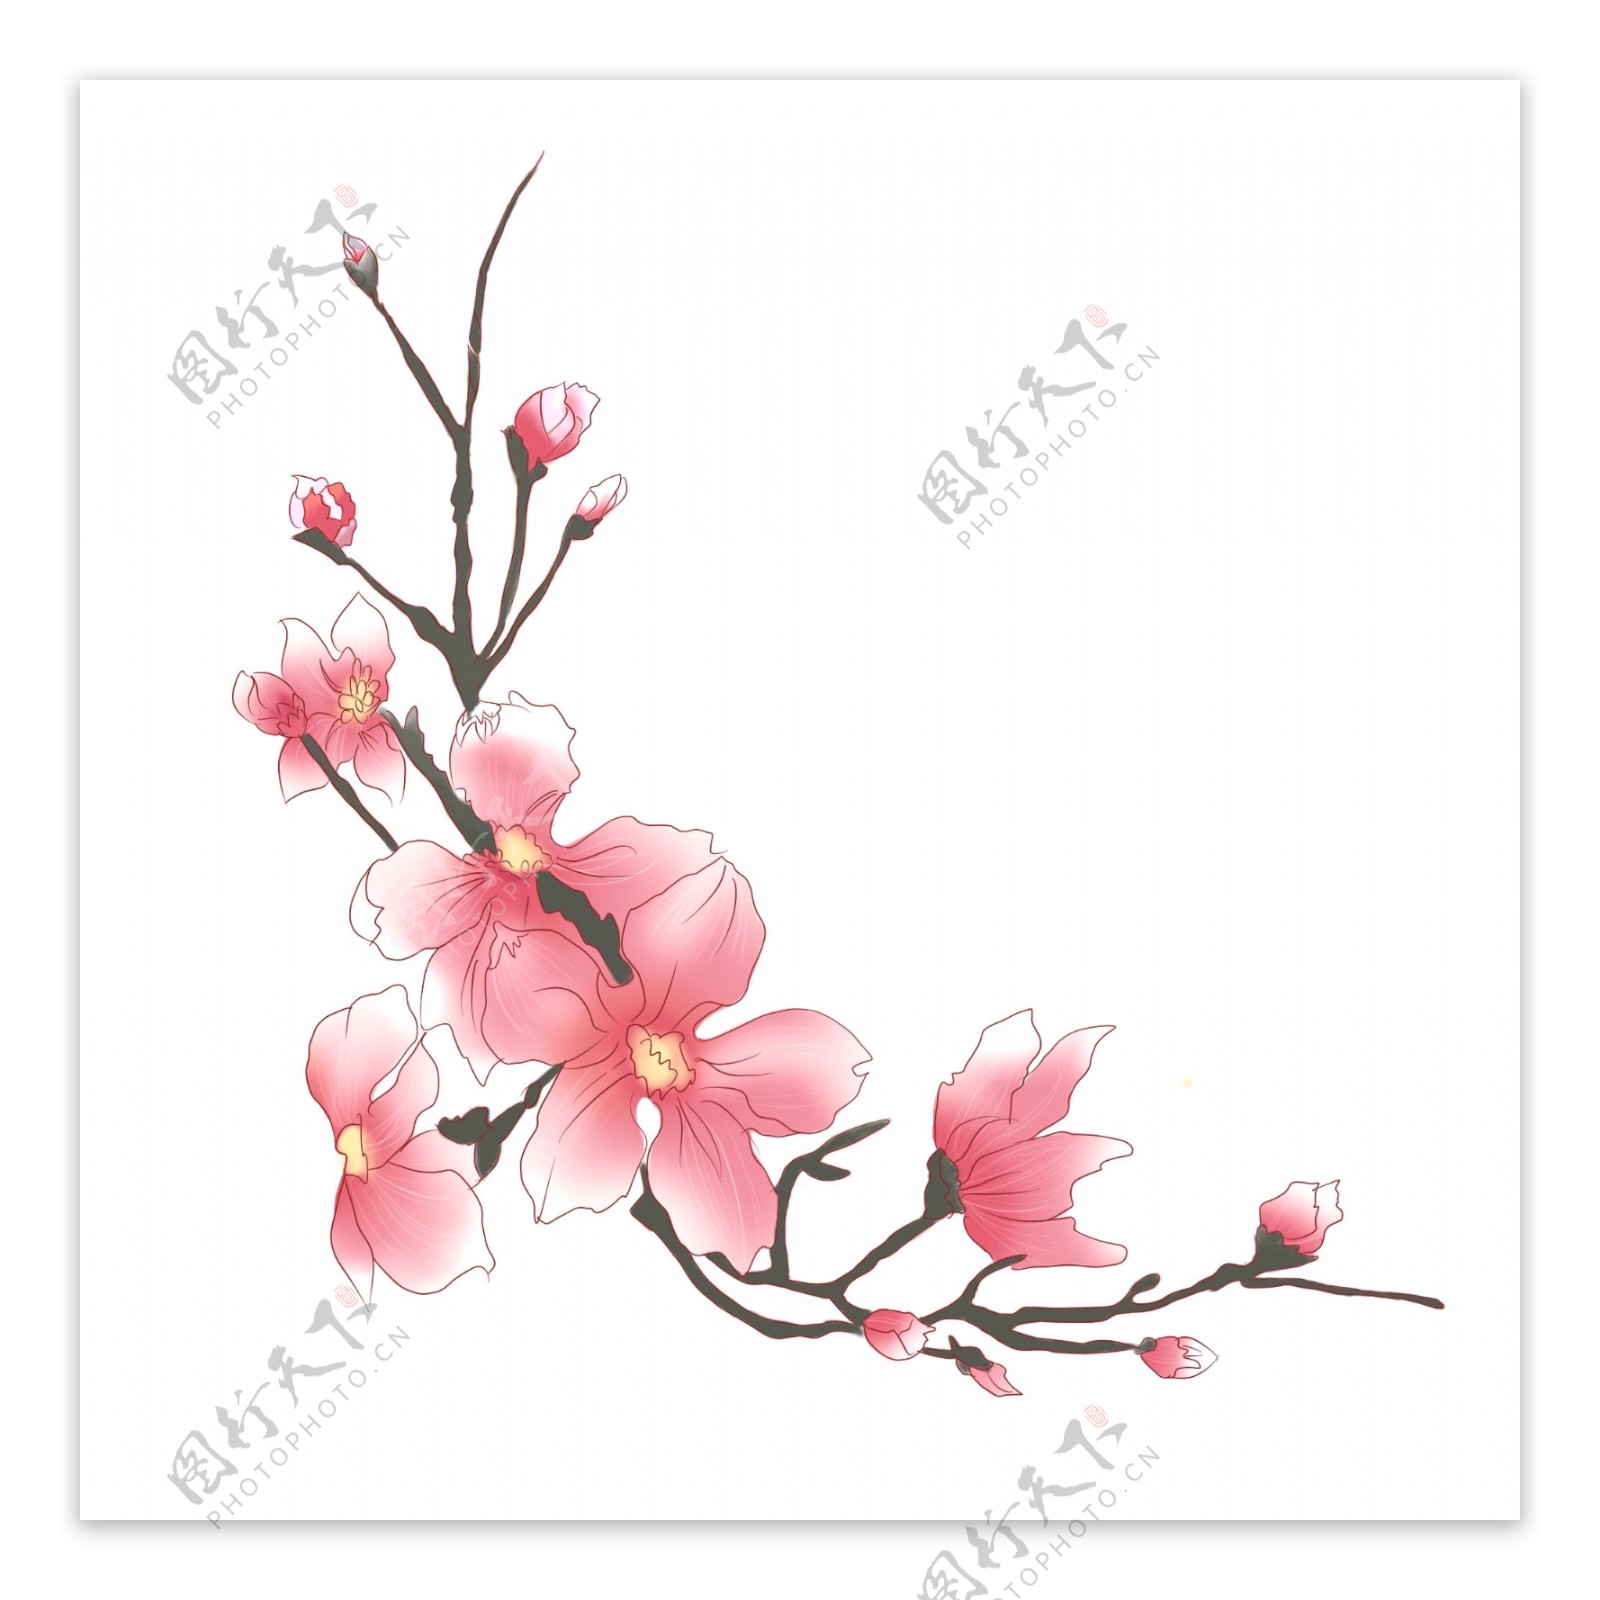 手绘植物通用元素水墨中国风桃花